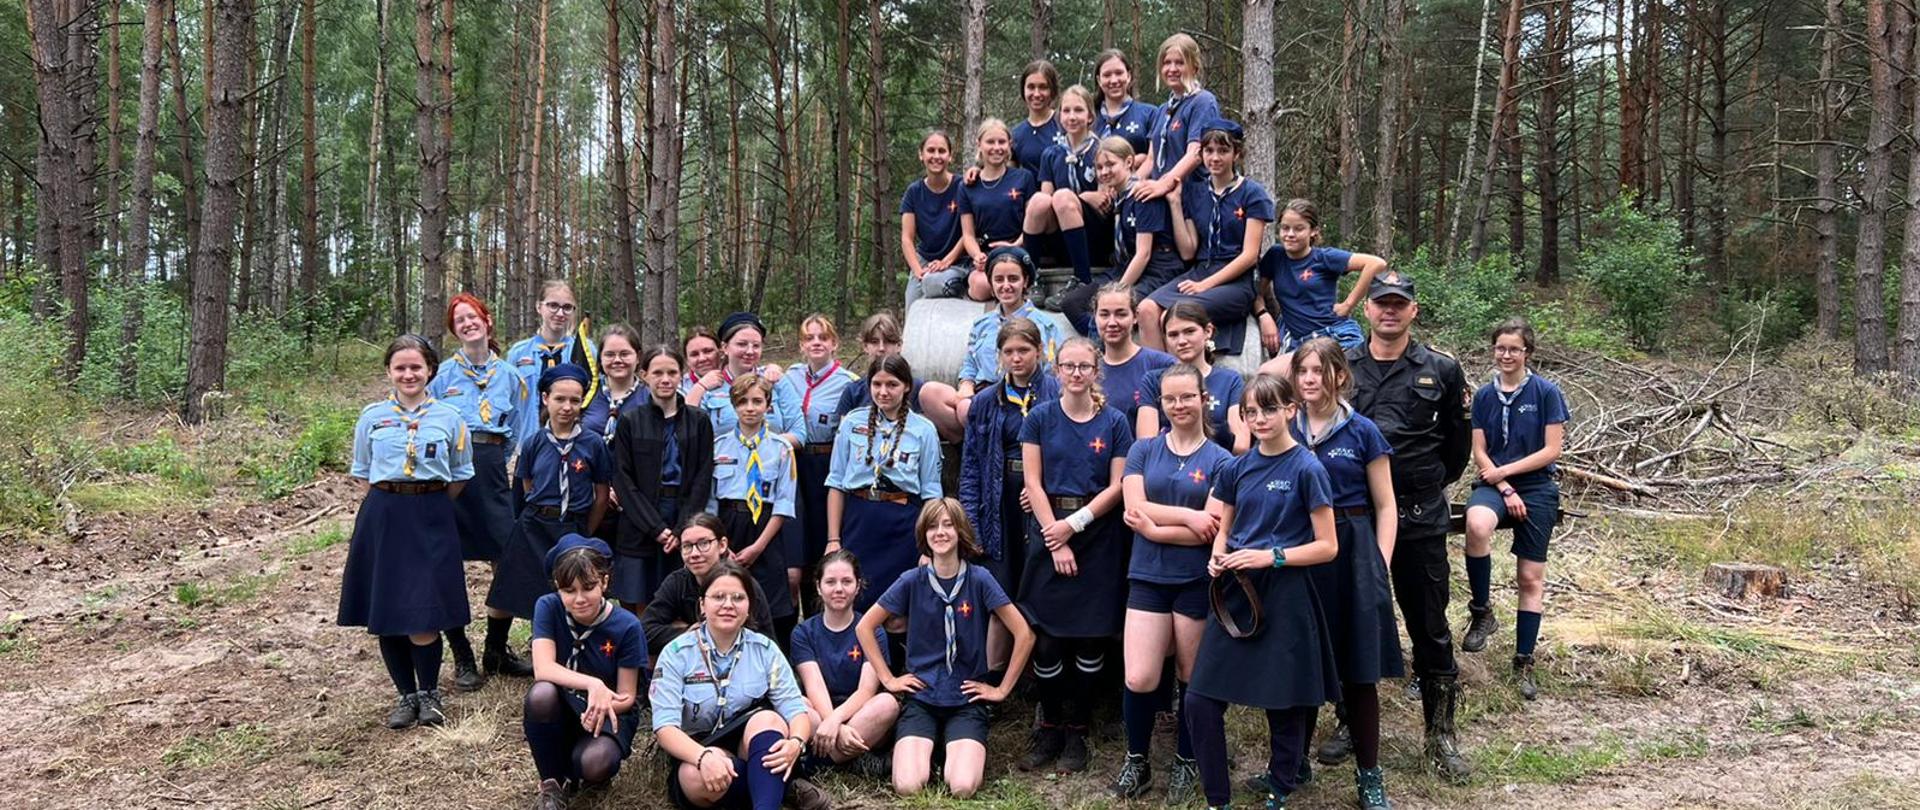 Wizytacja obozu harcerskiego w Rytelach Święckich - na zdjęciu w lesie na polanie harcerze w strojach harcerskich stoją w grupie do zdjęcia, z nimi strażak w ubraniu sztabowym.